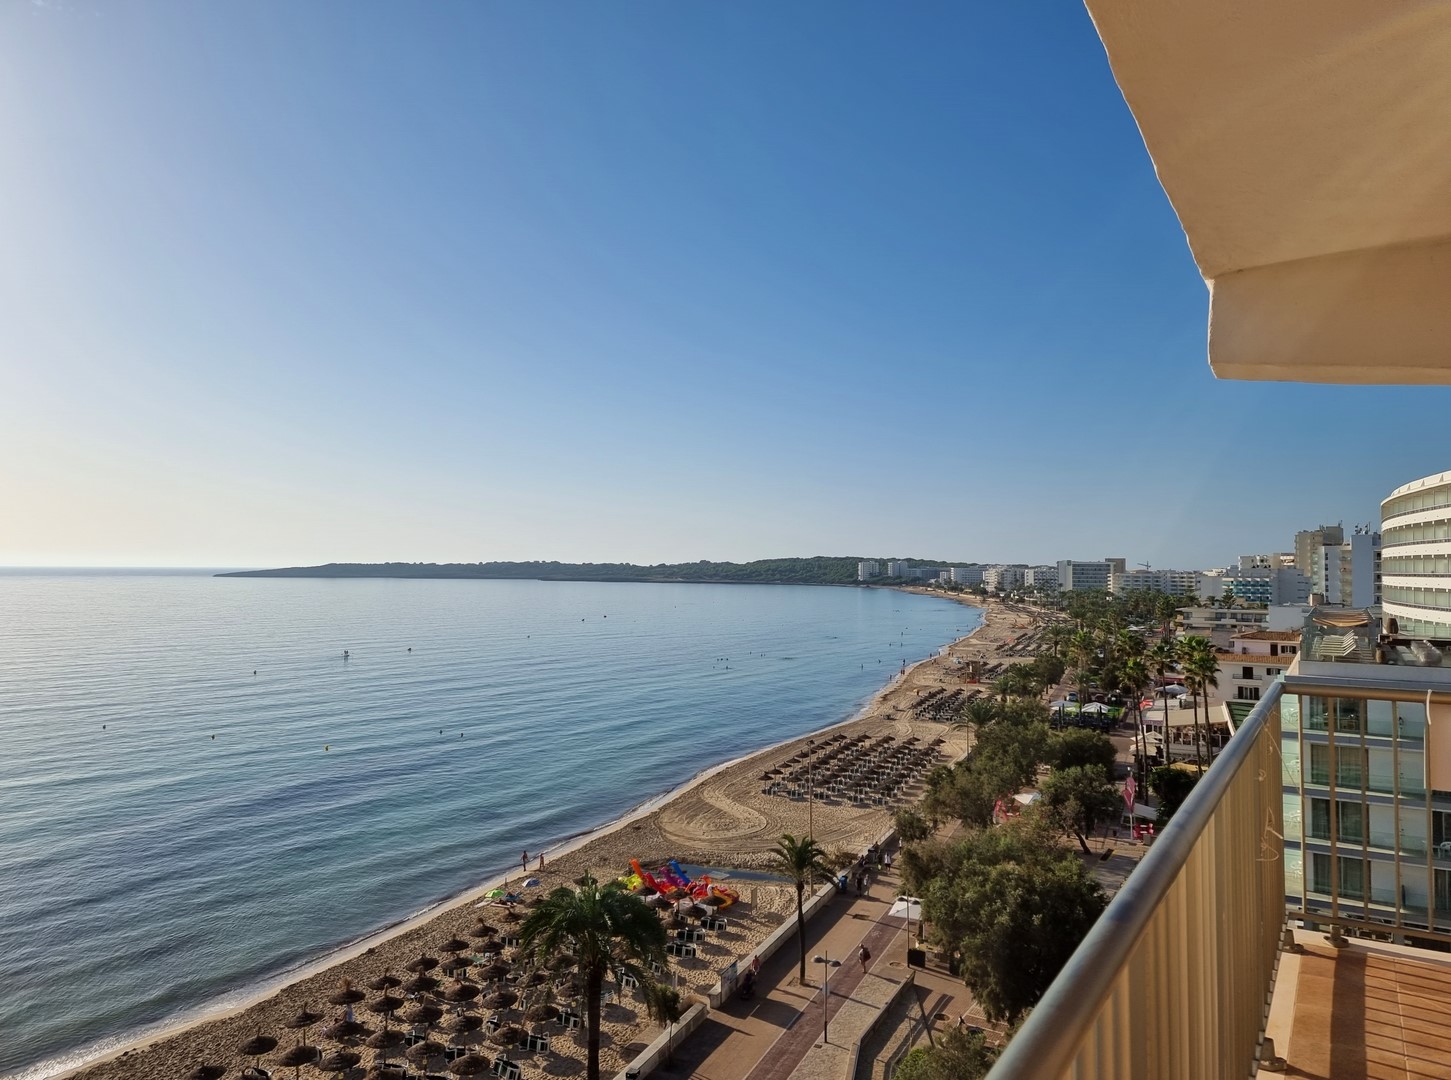 CALA MILLOR: Herrliche Meerblick-Wohnung mit spektakulärem Meer- und Panoramablick aus der 1. Reihe, komplett renoviert